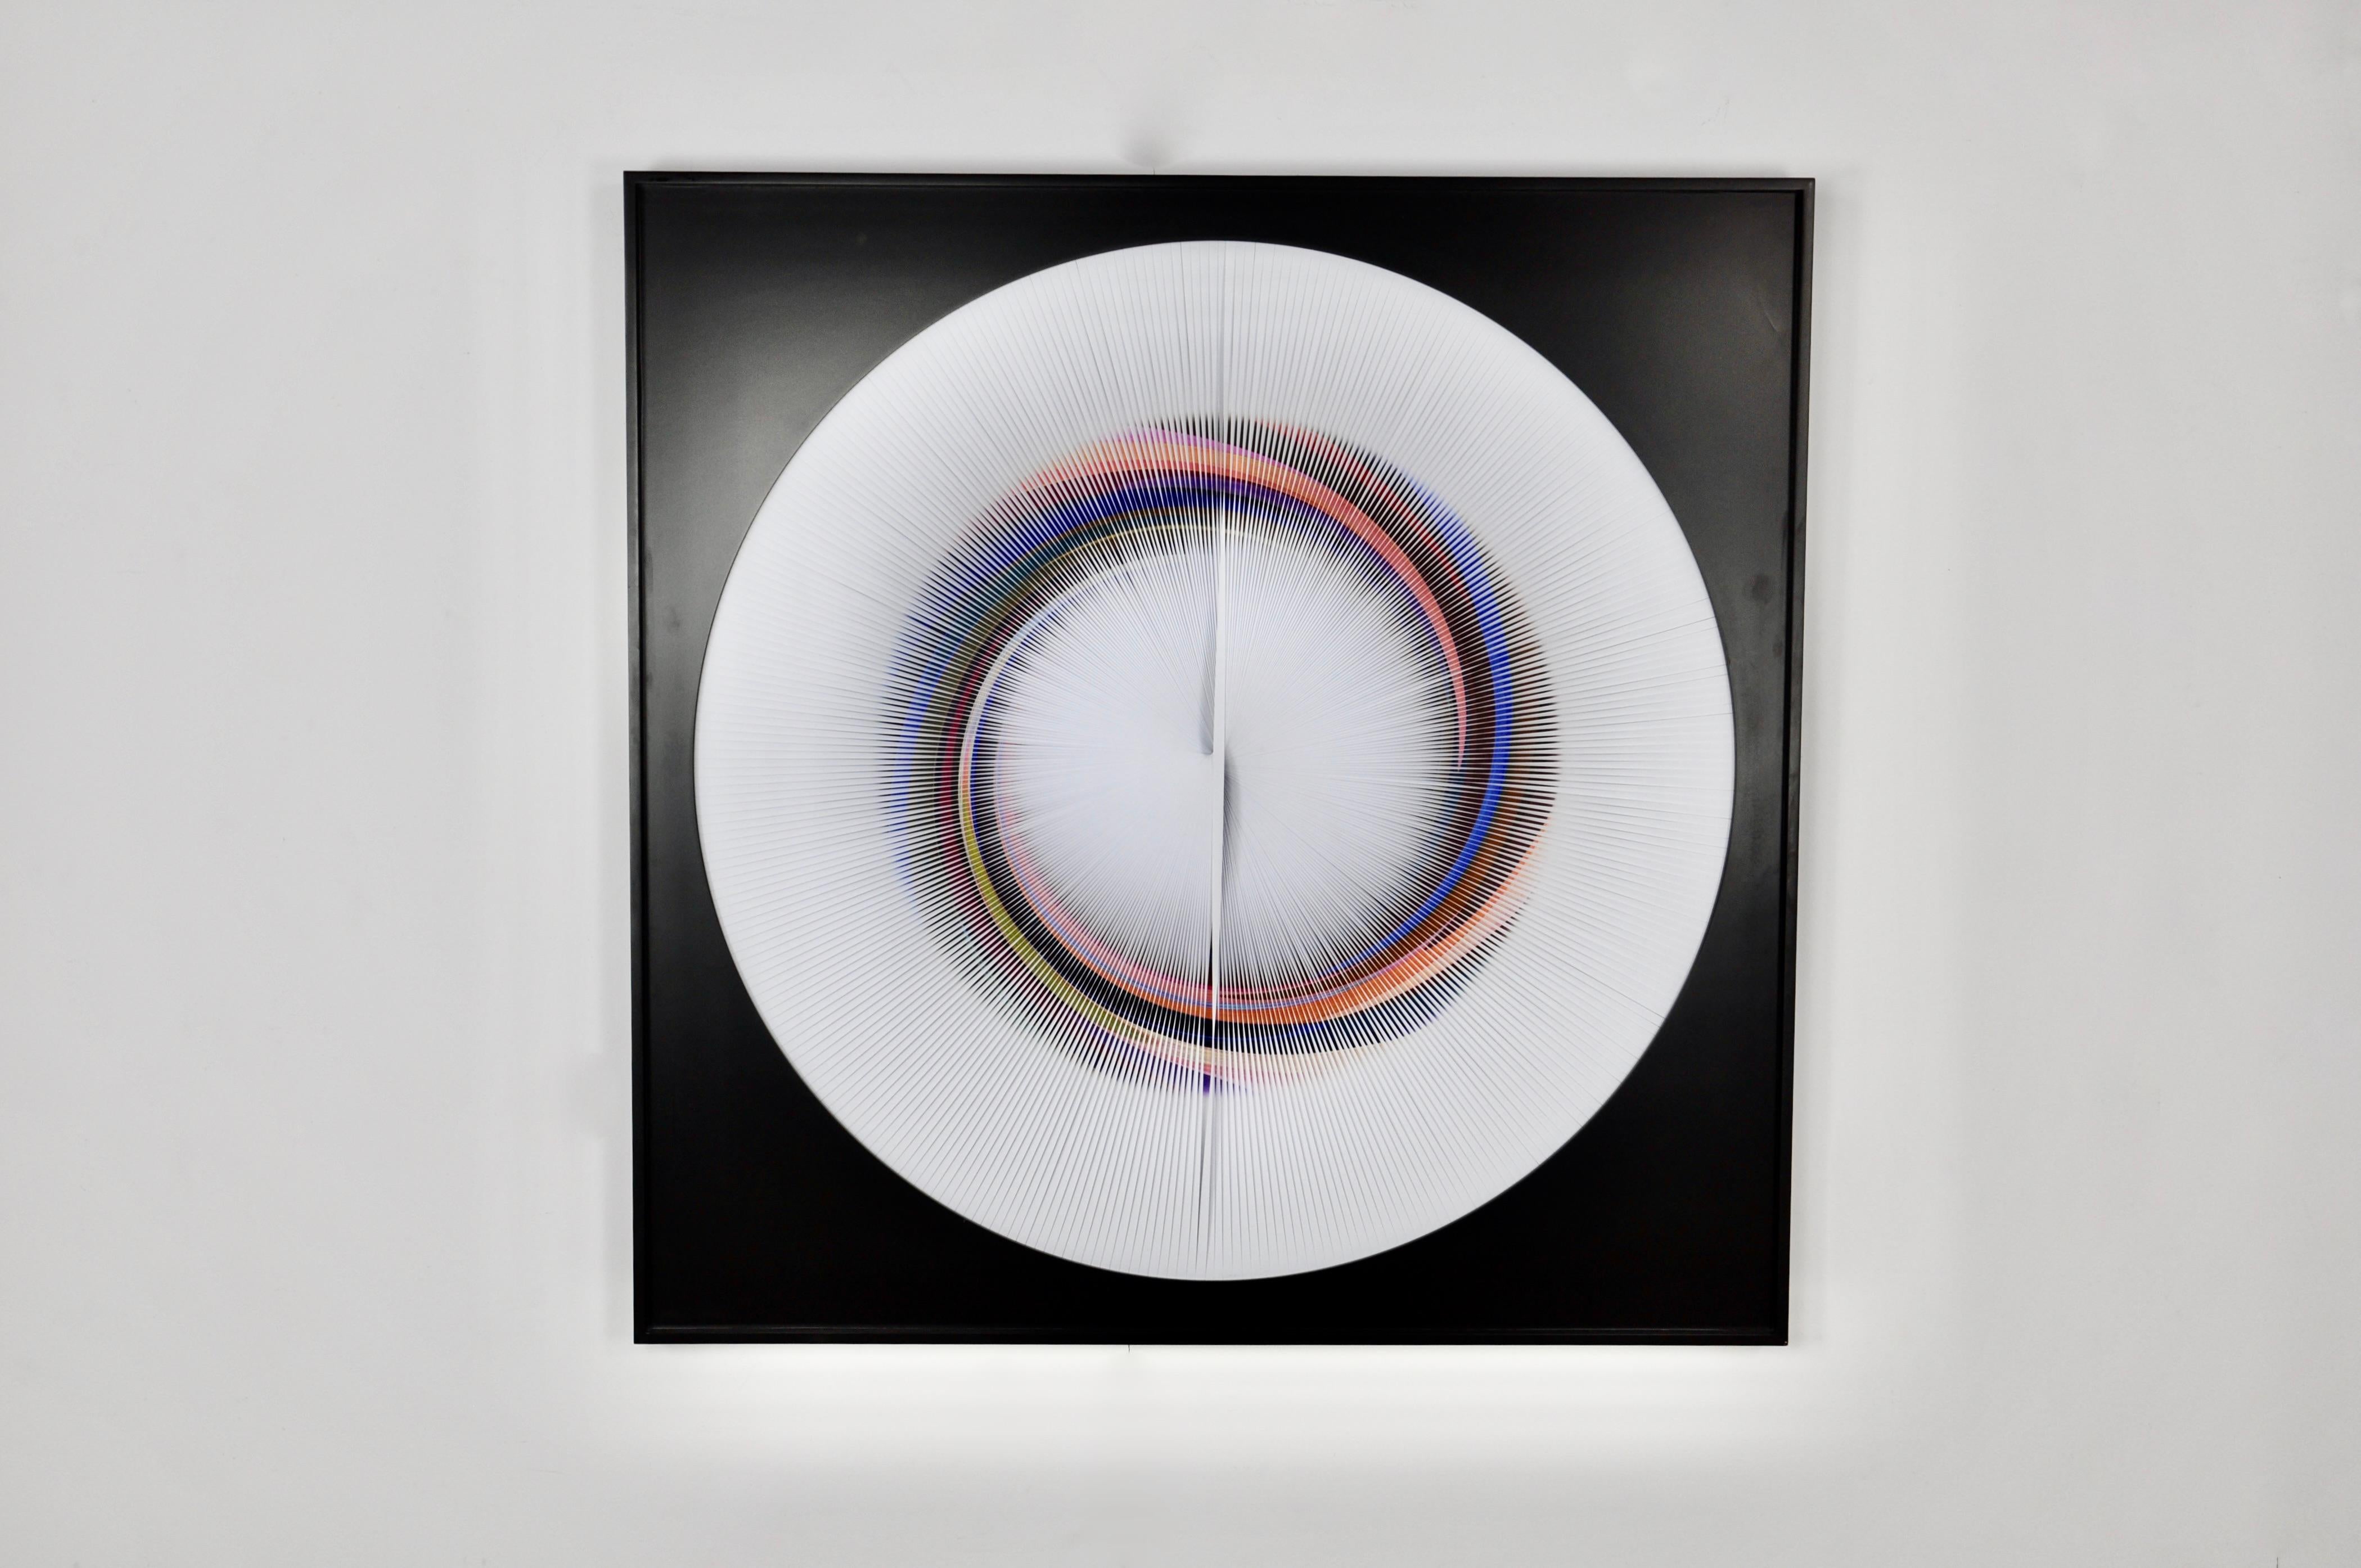 Es ist möglich, die Pappe zu entfernen, die runde Leinwand hat dann einen Durchmesser von 111 cm

Michael Scheers ist ein belgischer bildender Künstler. Er wurde 1958 geboren. Er lebt und arbeitet in Rixensart (BE).
Als Autodidakt ist Michael